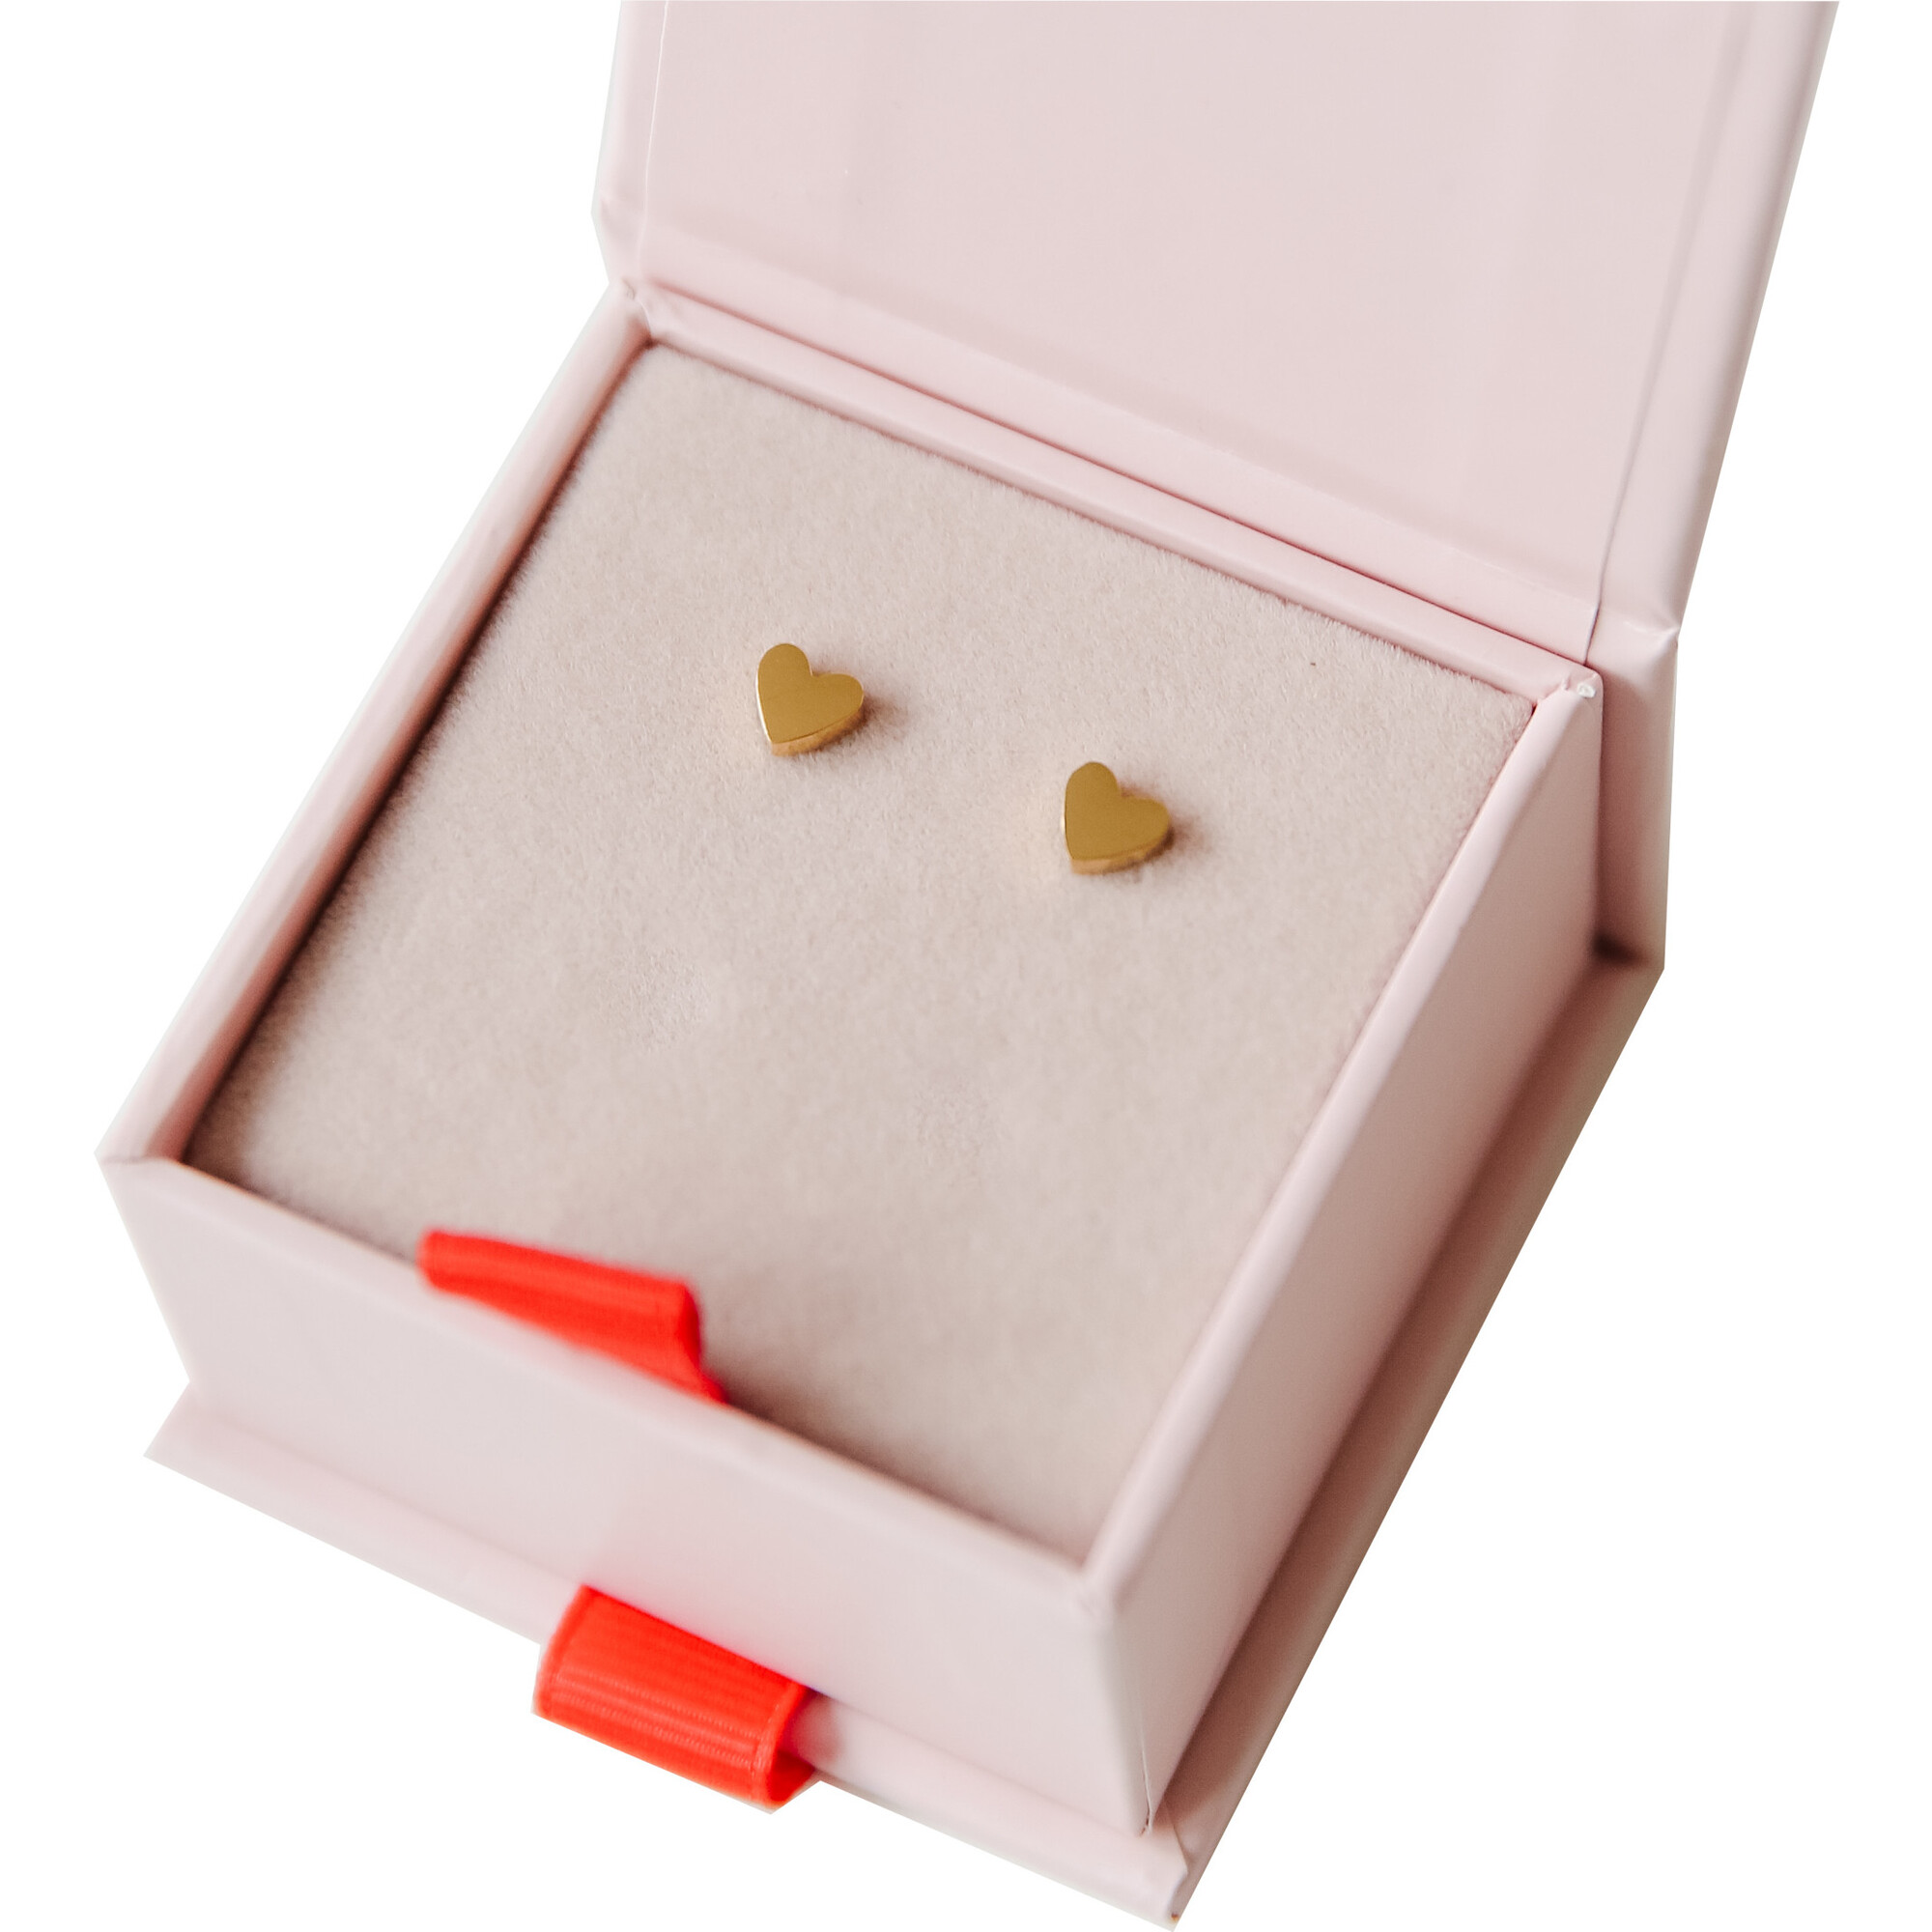 Mini Piece of My Heart Earrings